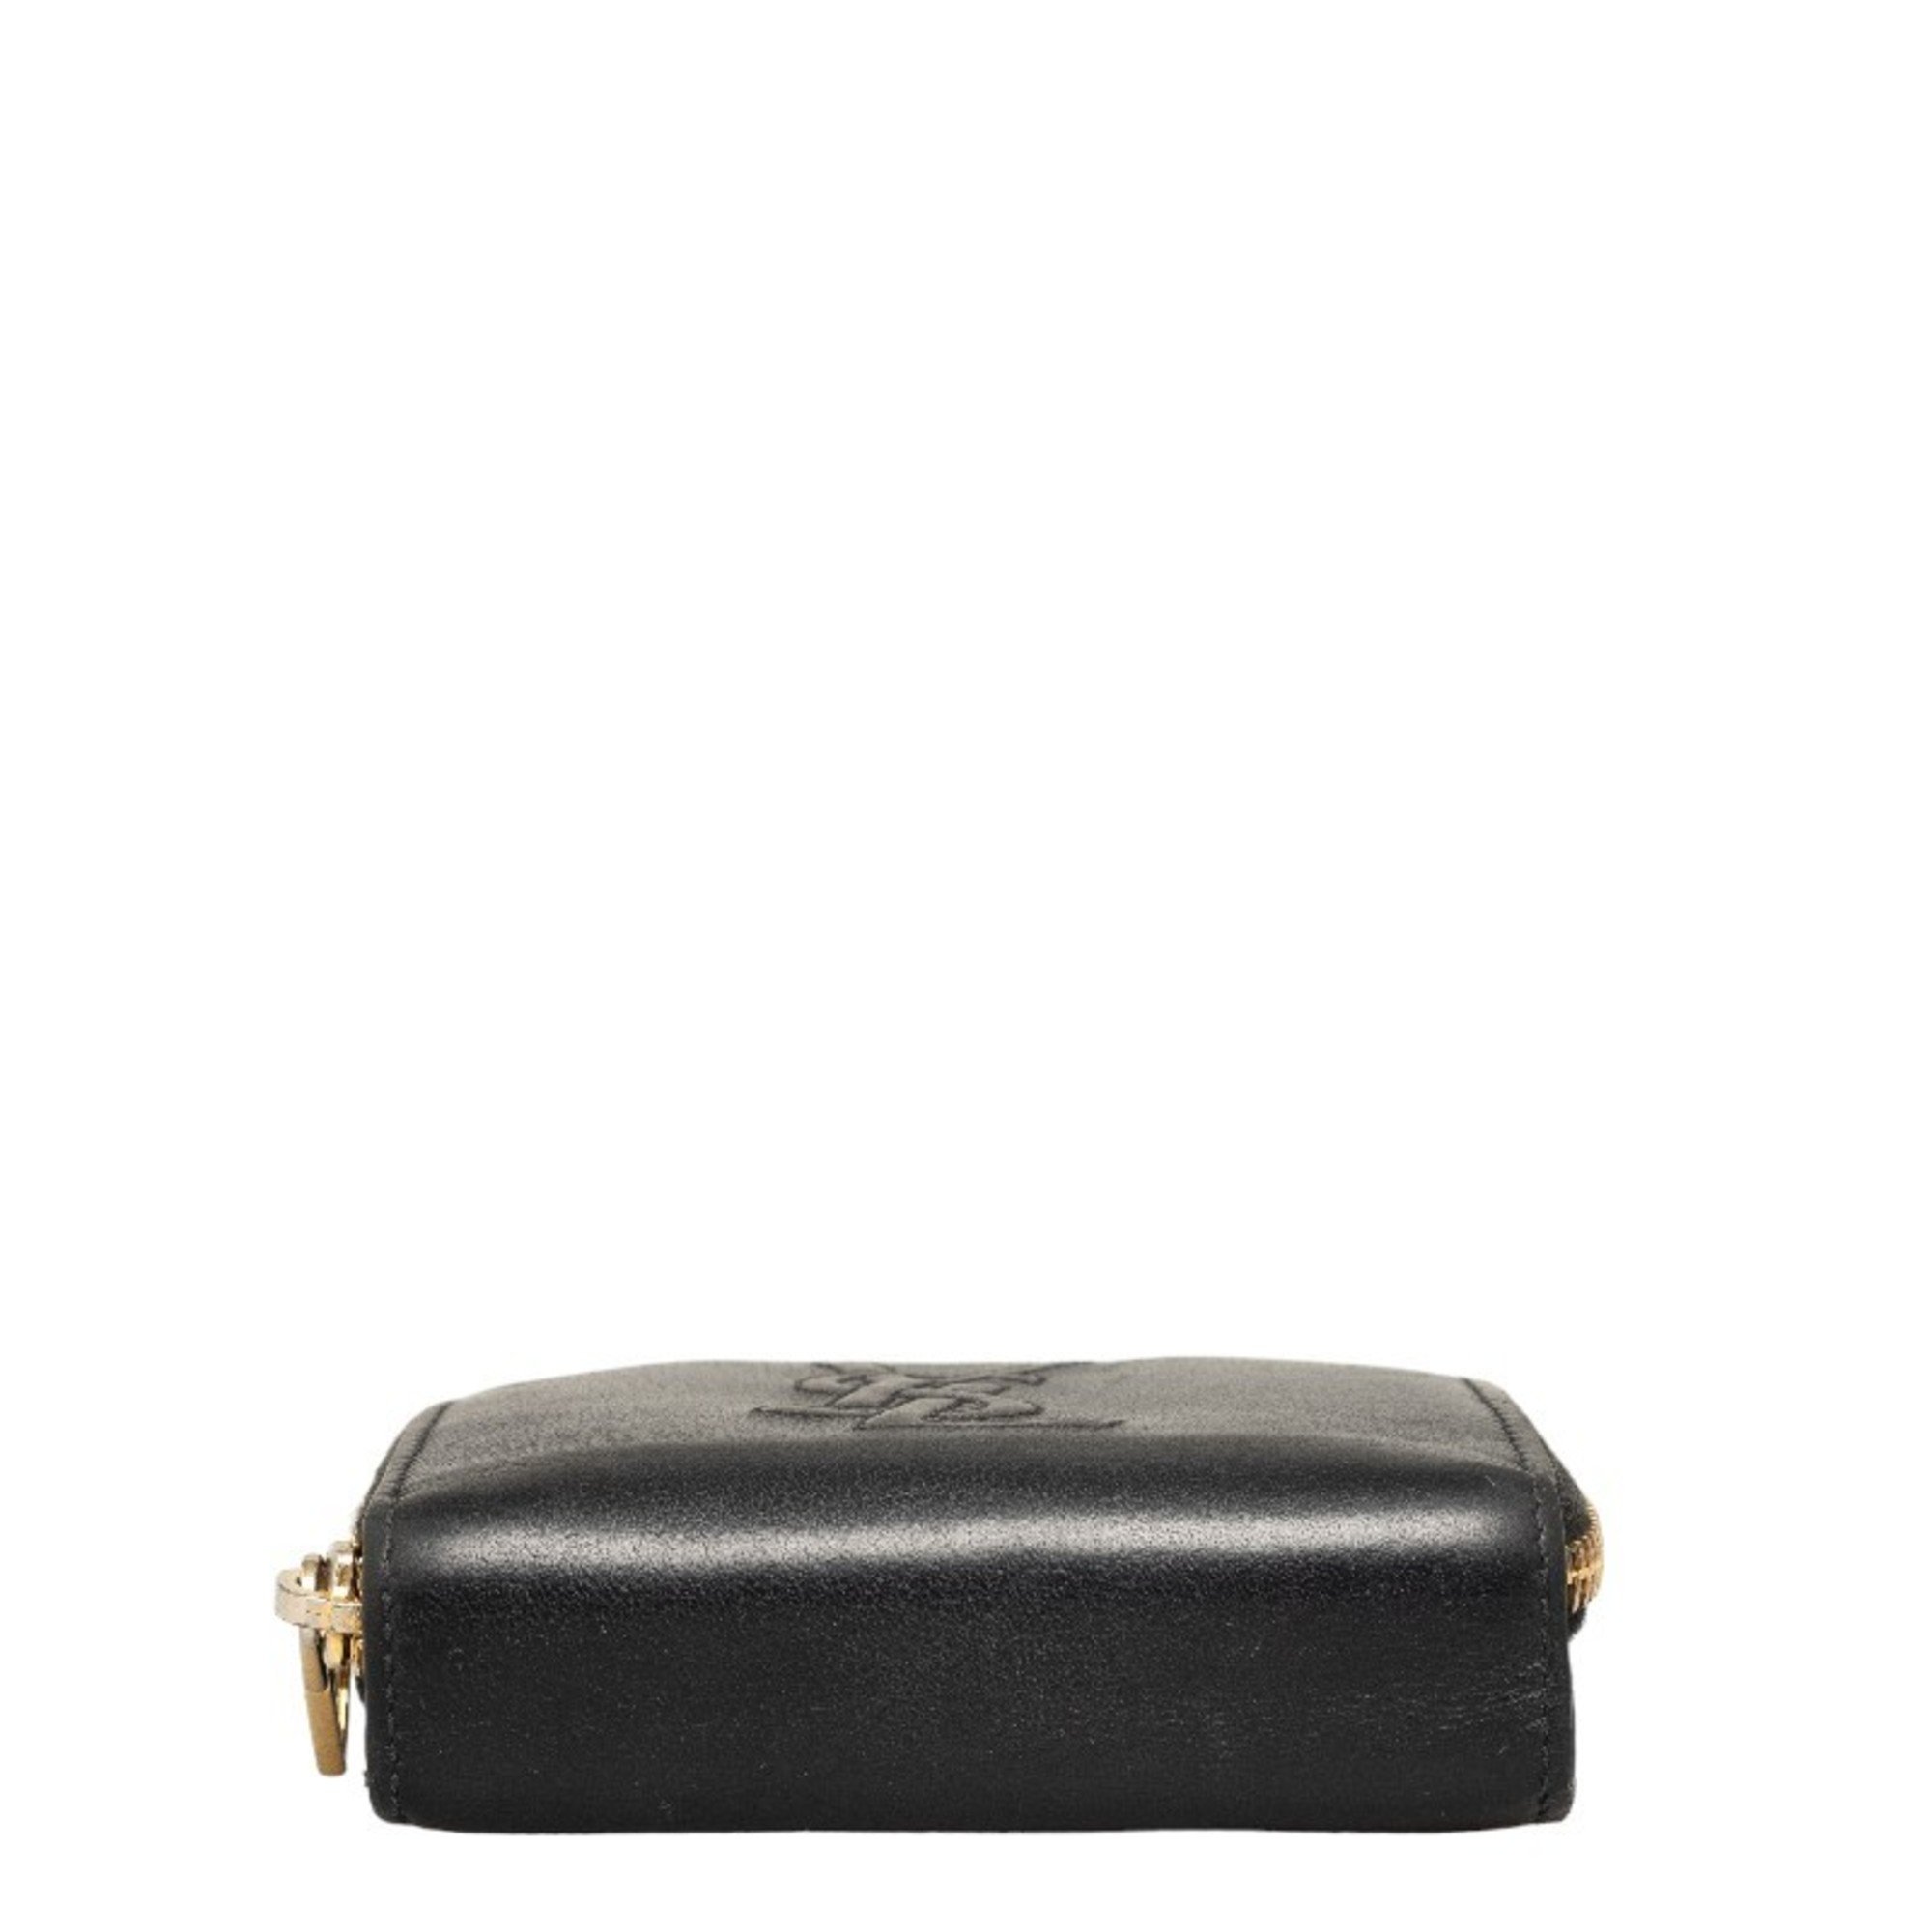 Saint Laurent YSL Bifold Wallet Compact GUE568985 Black Leather Women's SAINT LAURENT